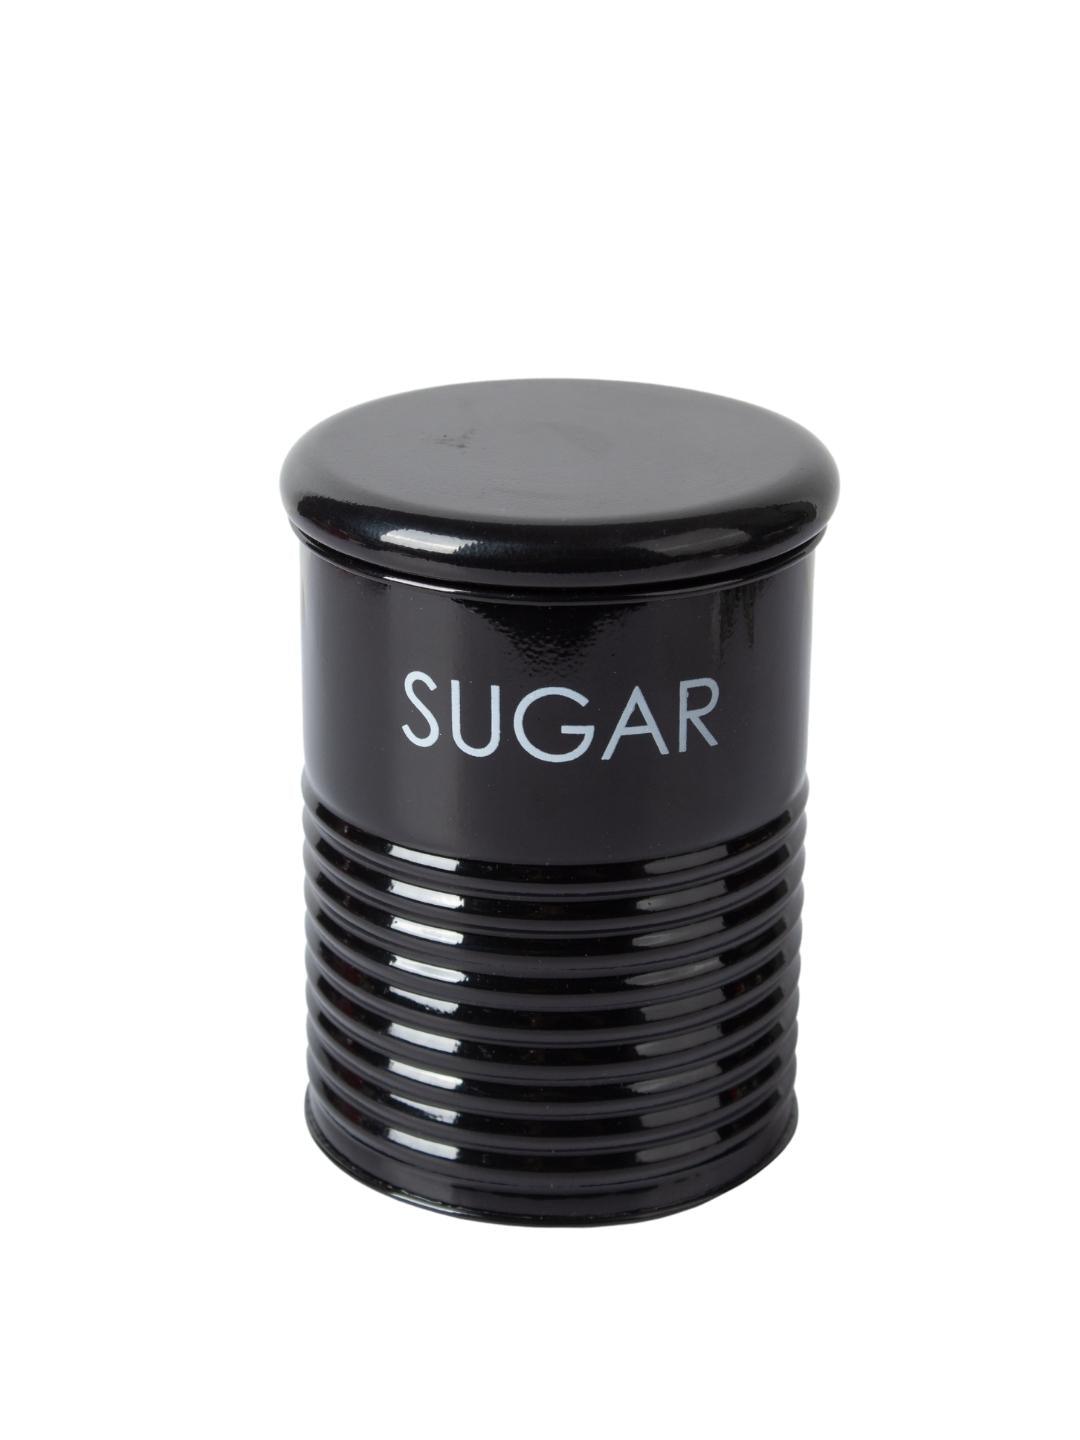 Tea & Sugar Jar (Each 900 Ml) +  Biscuits & Namkeen Jar (Each 1700 Ml) - Black, Set Of 4